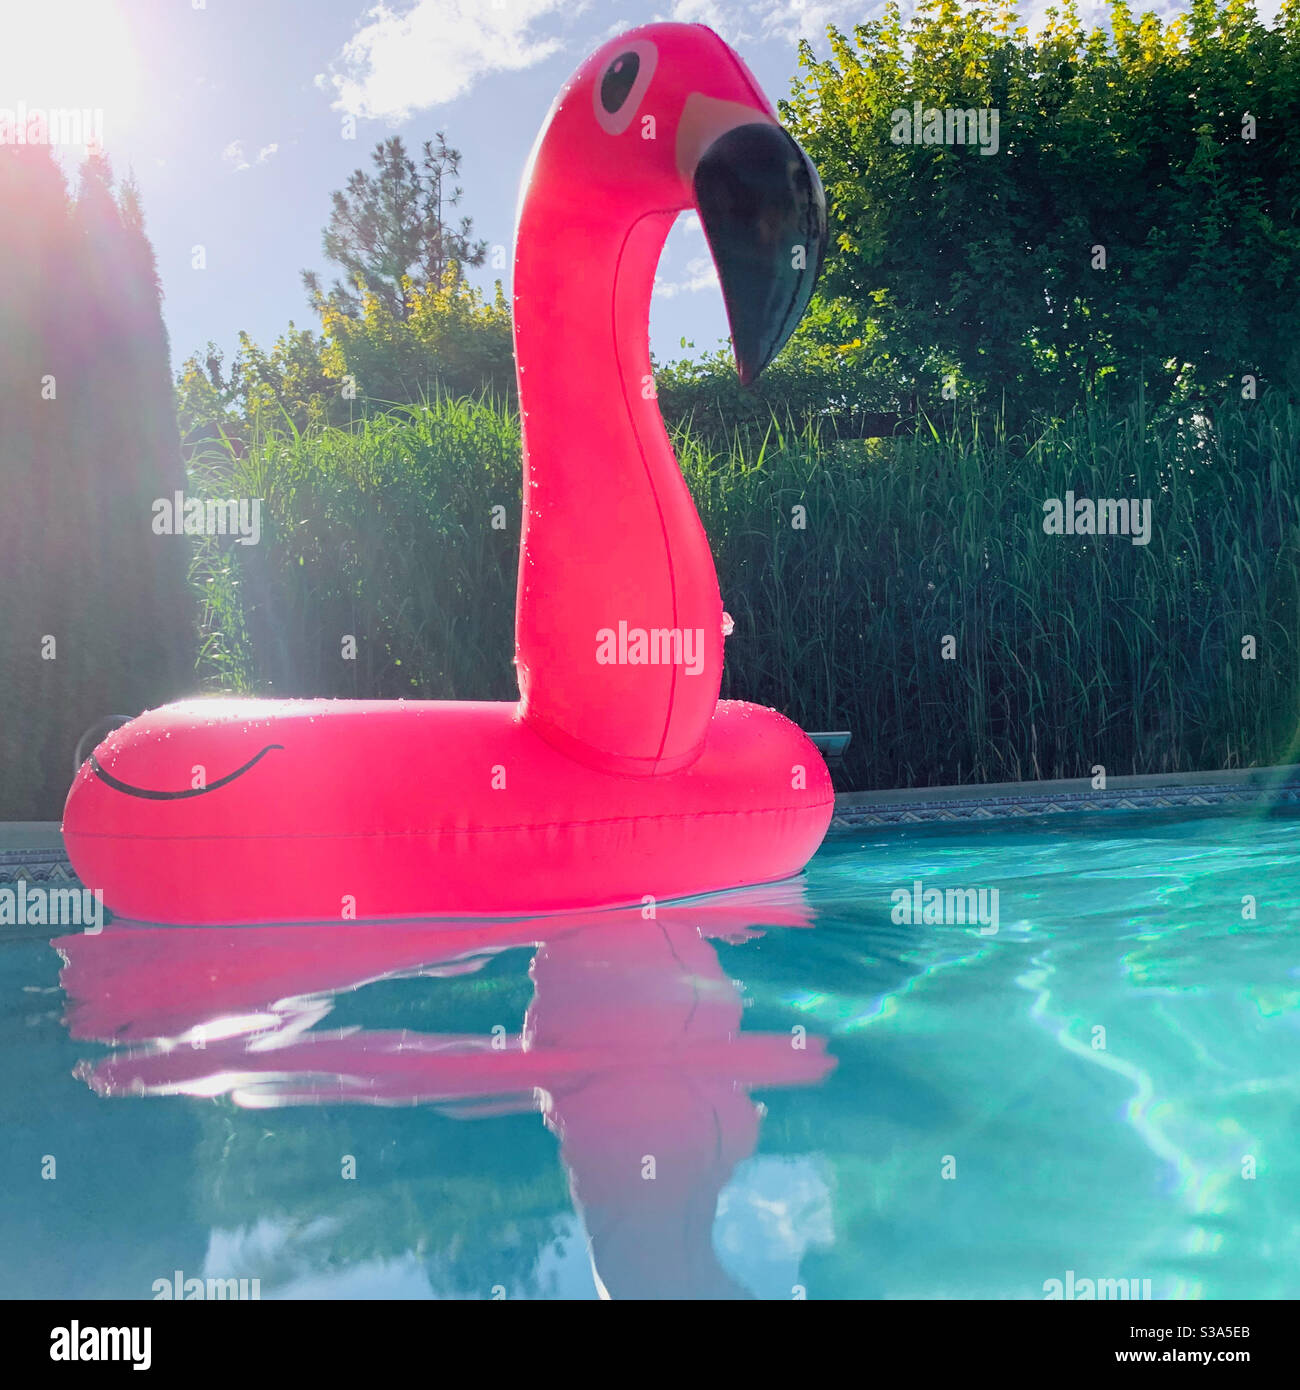 Ein knallrosa aufblasbarer Flamingo, der an einem sonnigen Tag im klaren, frischen Wasser eines Hinterhof-Swimmingpools mit üppiger grüner Vegetation im Hintergrund schwimmt. Stockfoto